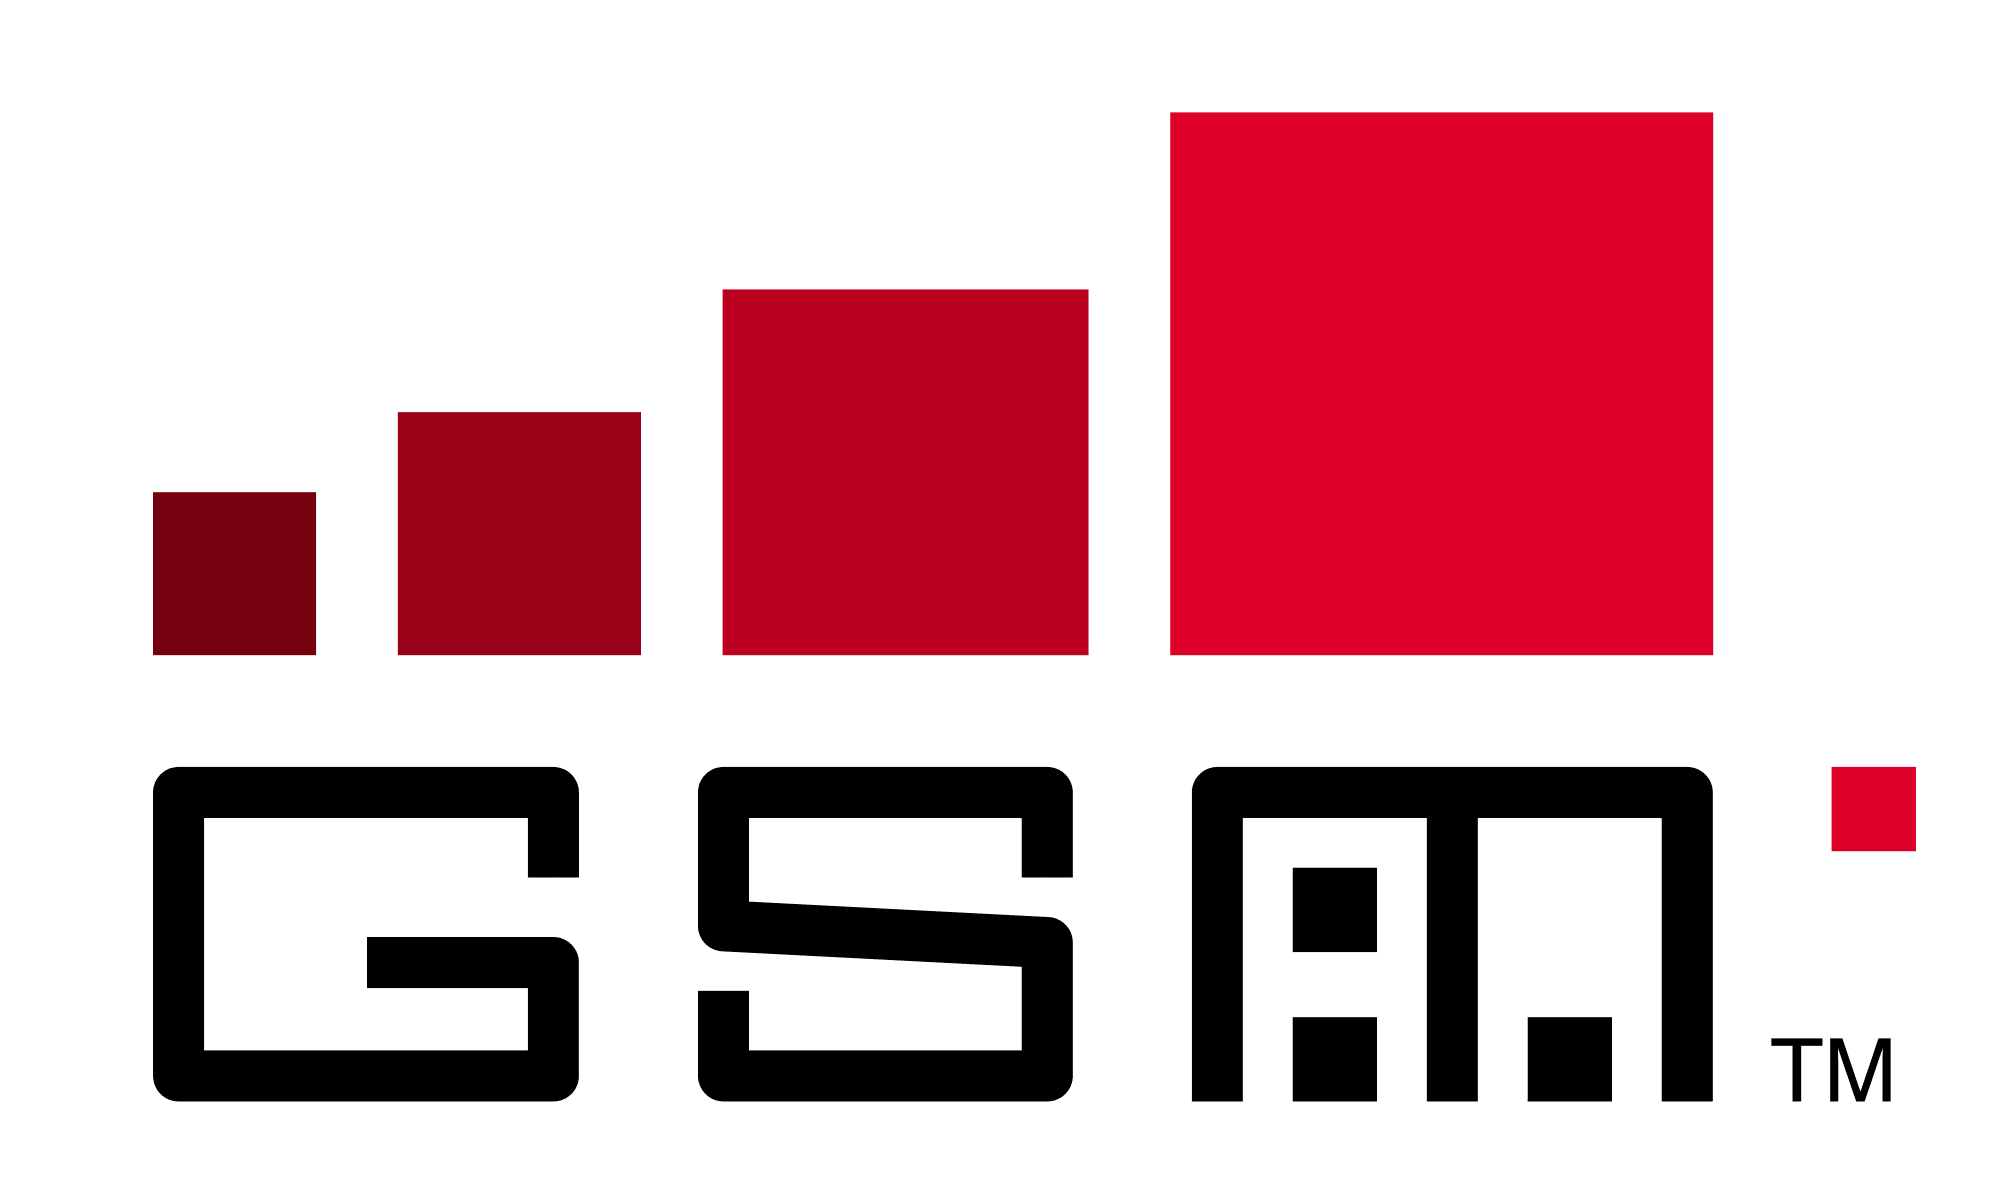 logo gsm